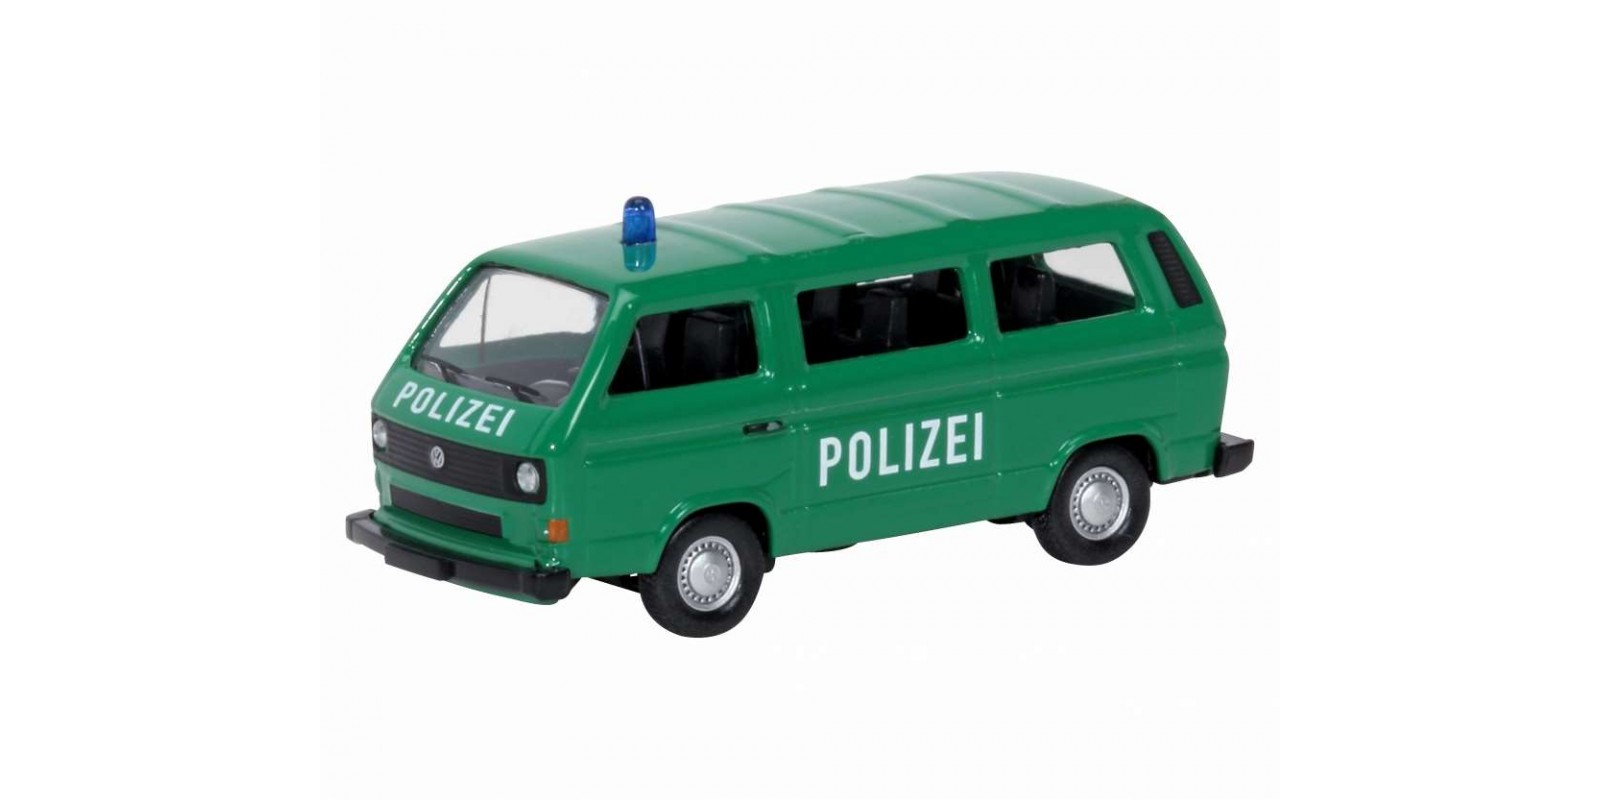 SC452606900 VW T3 Αστυνομικό Λεωφορείο τύπου Minibus της Γερμανικής Ομοσπονδιακής Αστυνομίας, από μέταλλο, κλίμακα 1:87